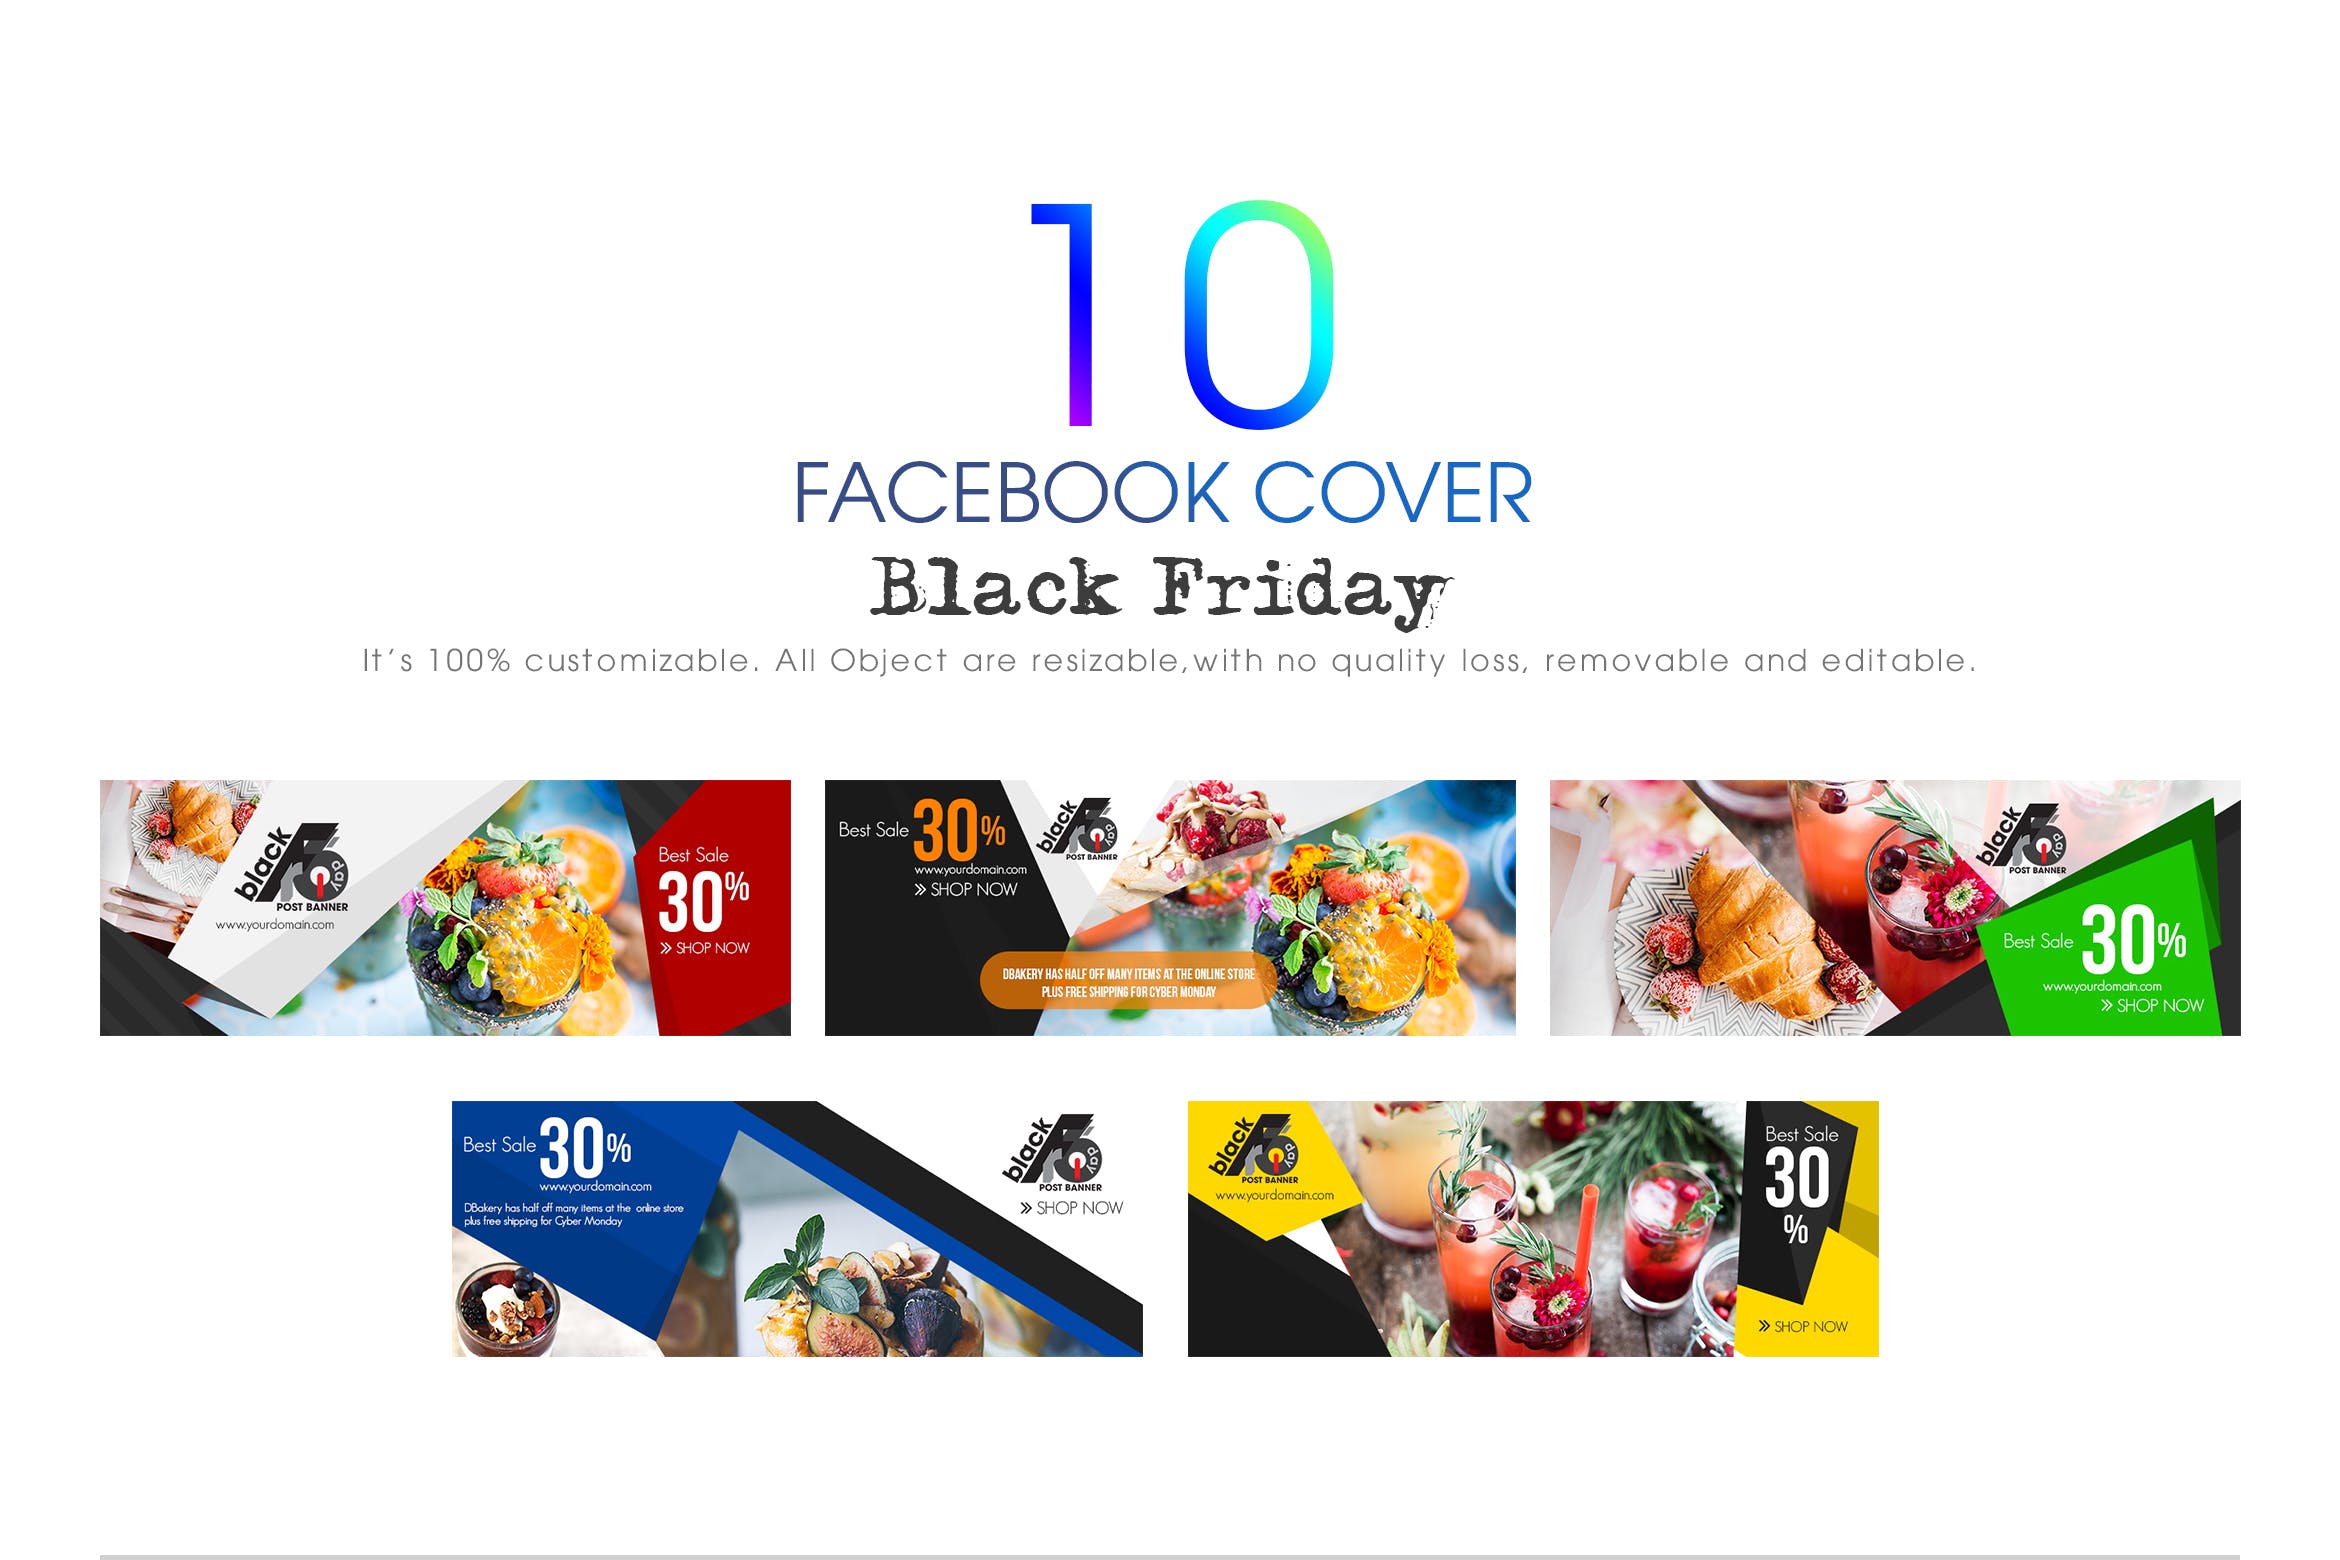 10款Facebook社交平台黒五购物广告Banner设计模板第一素材精选 10 Facebook Cover-Black Friday插图